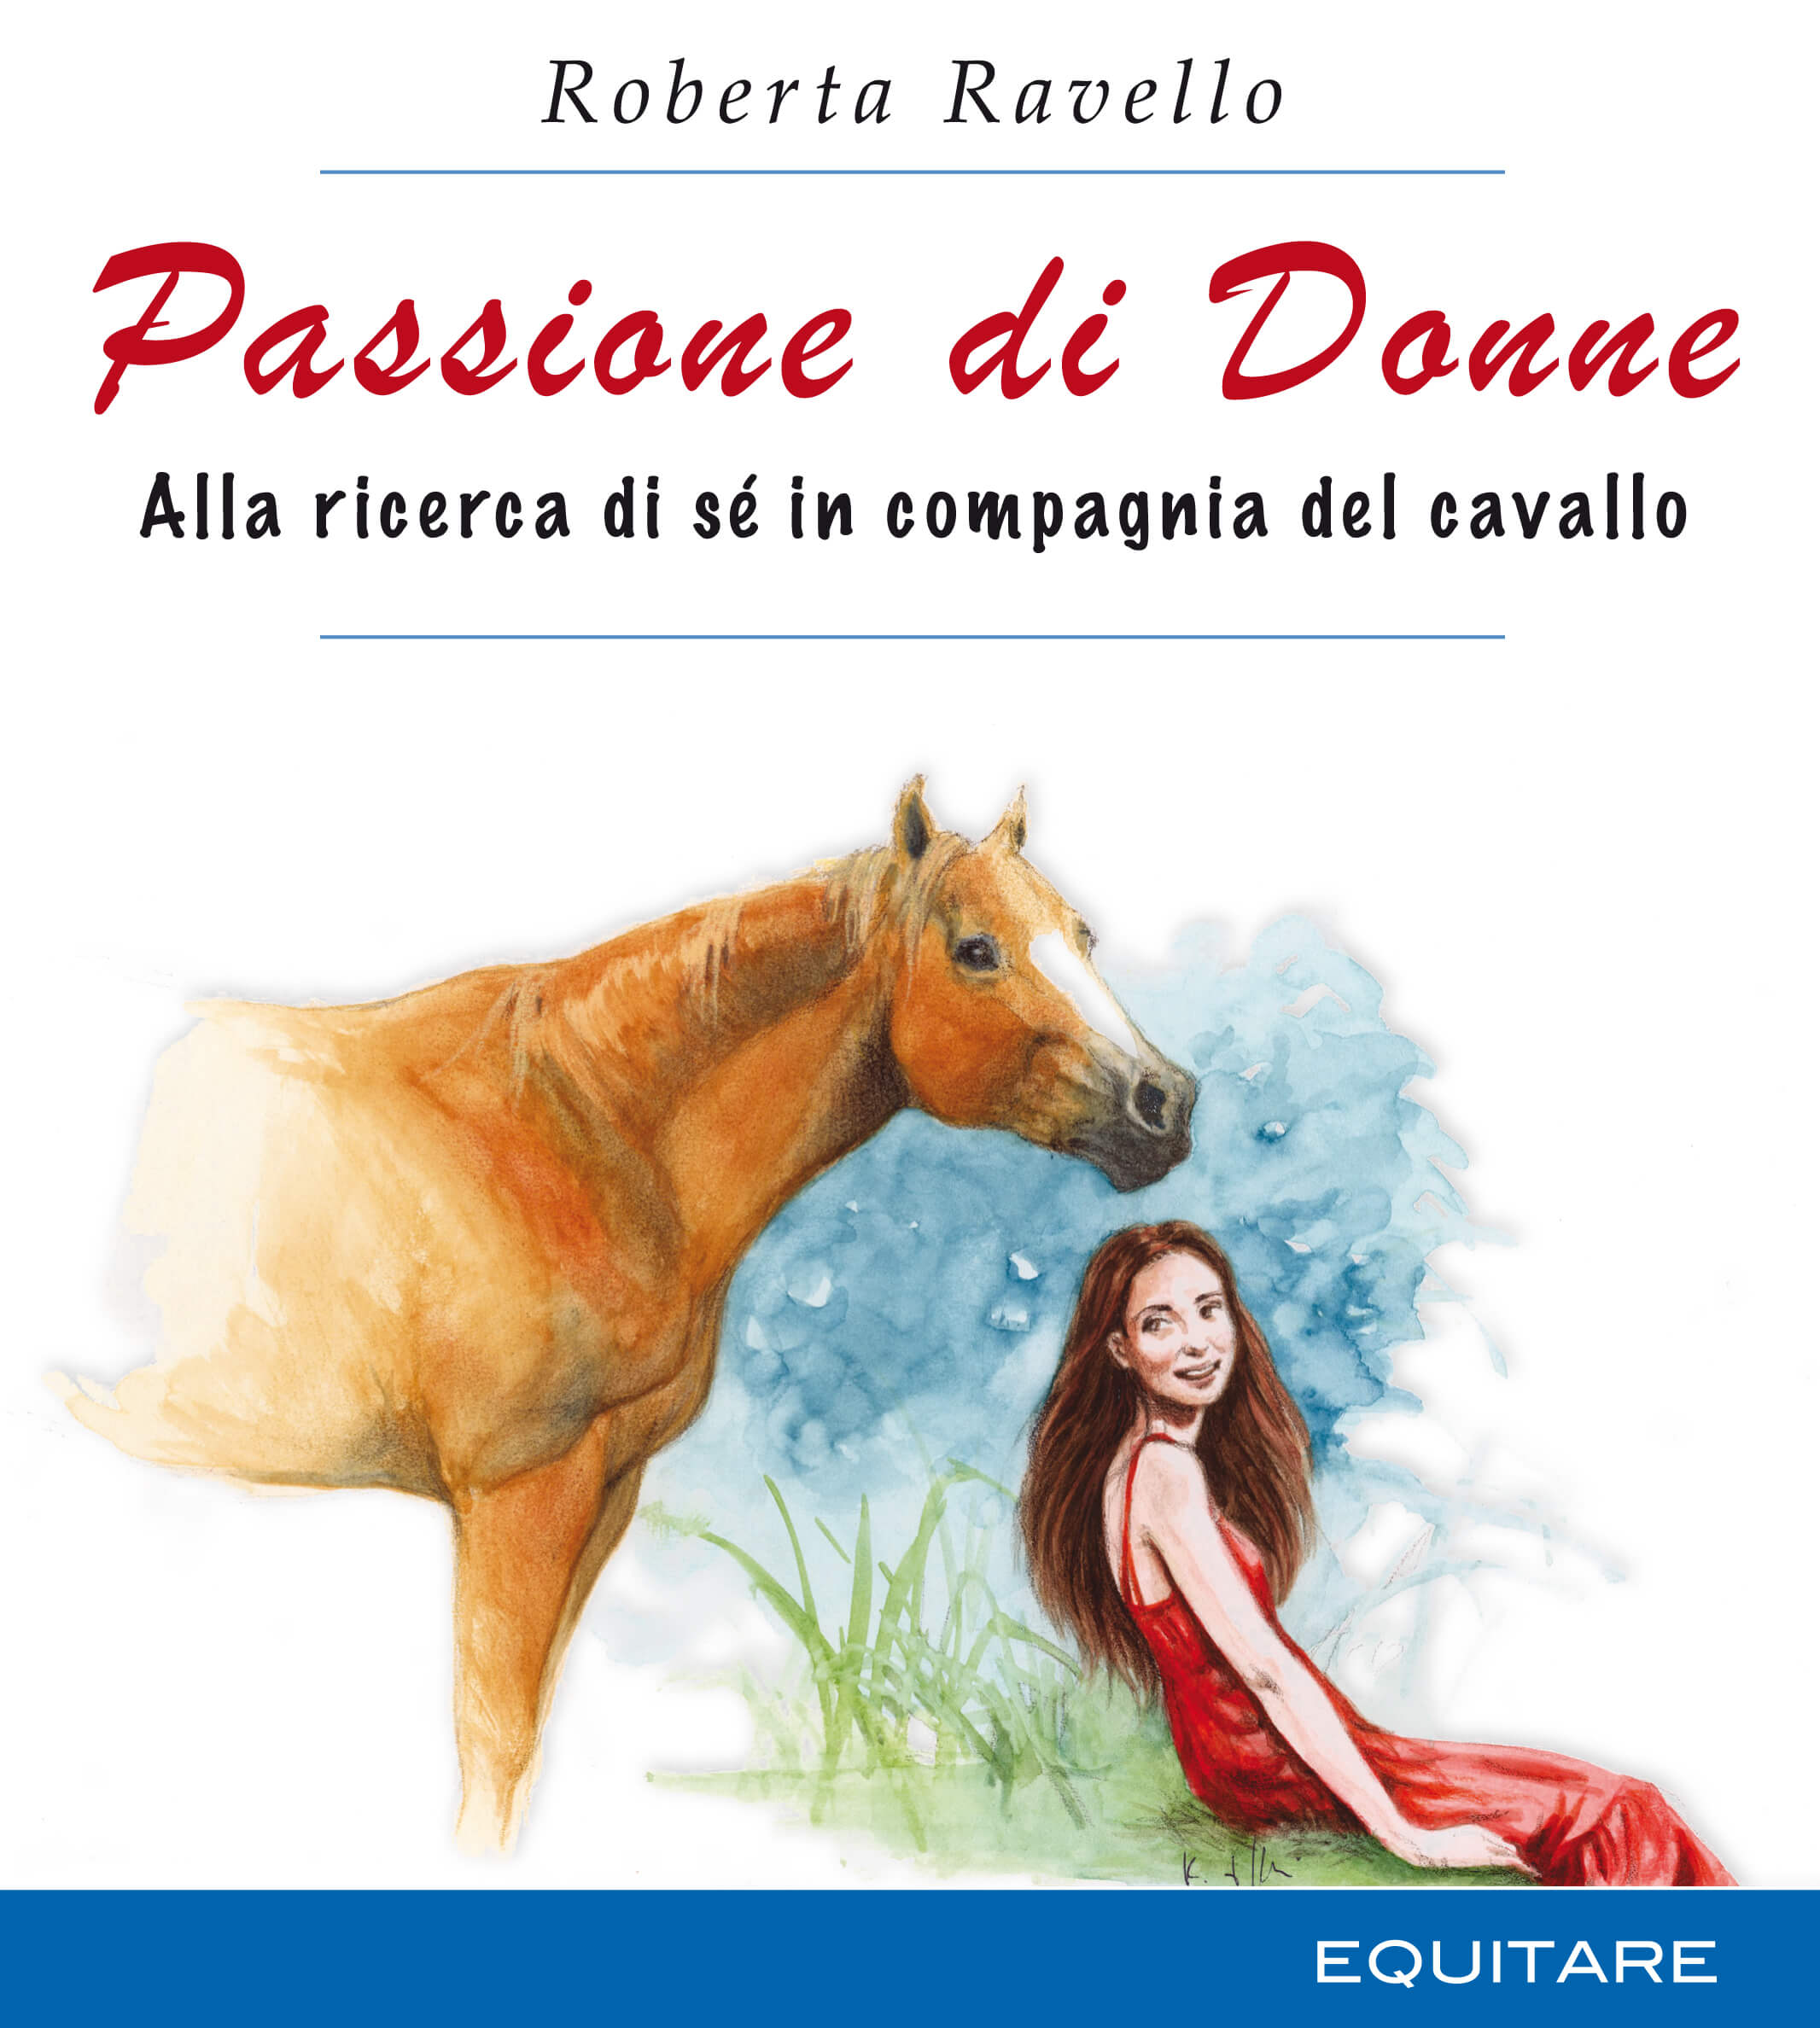 PASSIONE DI DONNE - Roberta Ravello